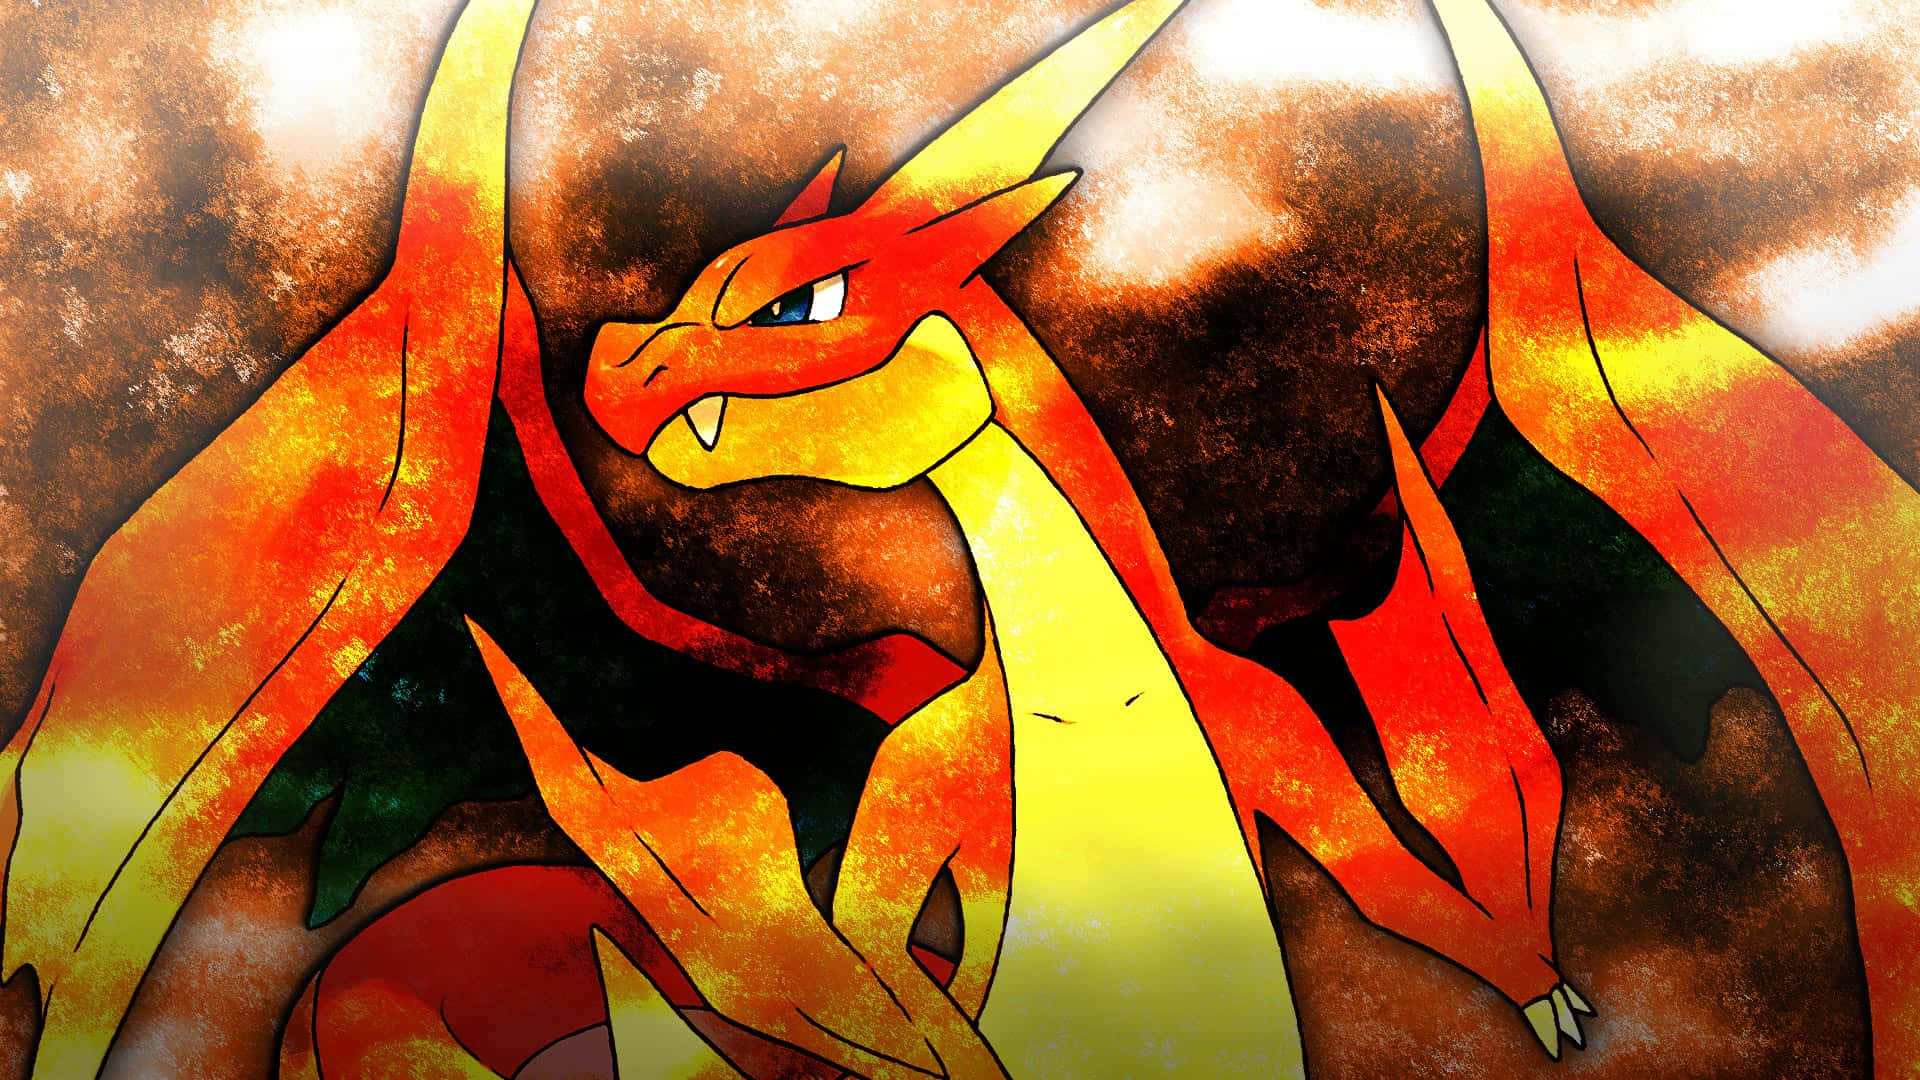 Derfeuer Speiende Mächtige Charizard, Ein Legendäres Pokémon. Wallpaper